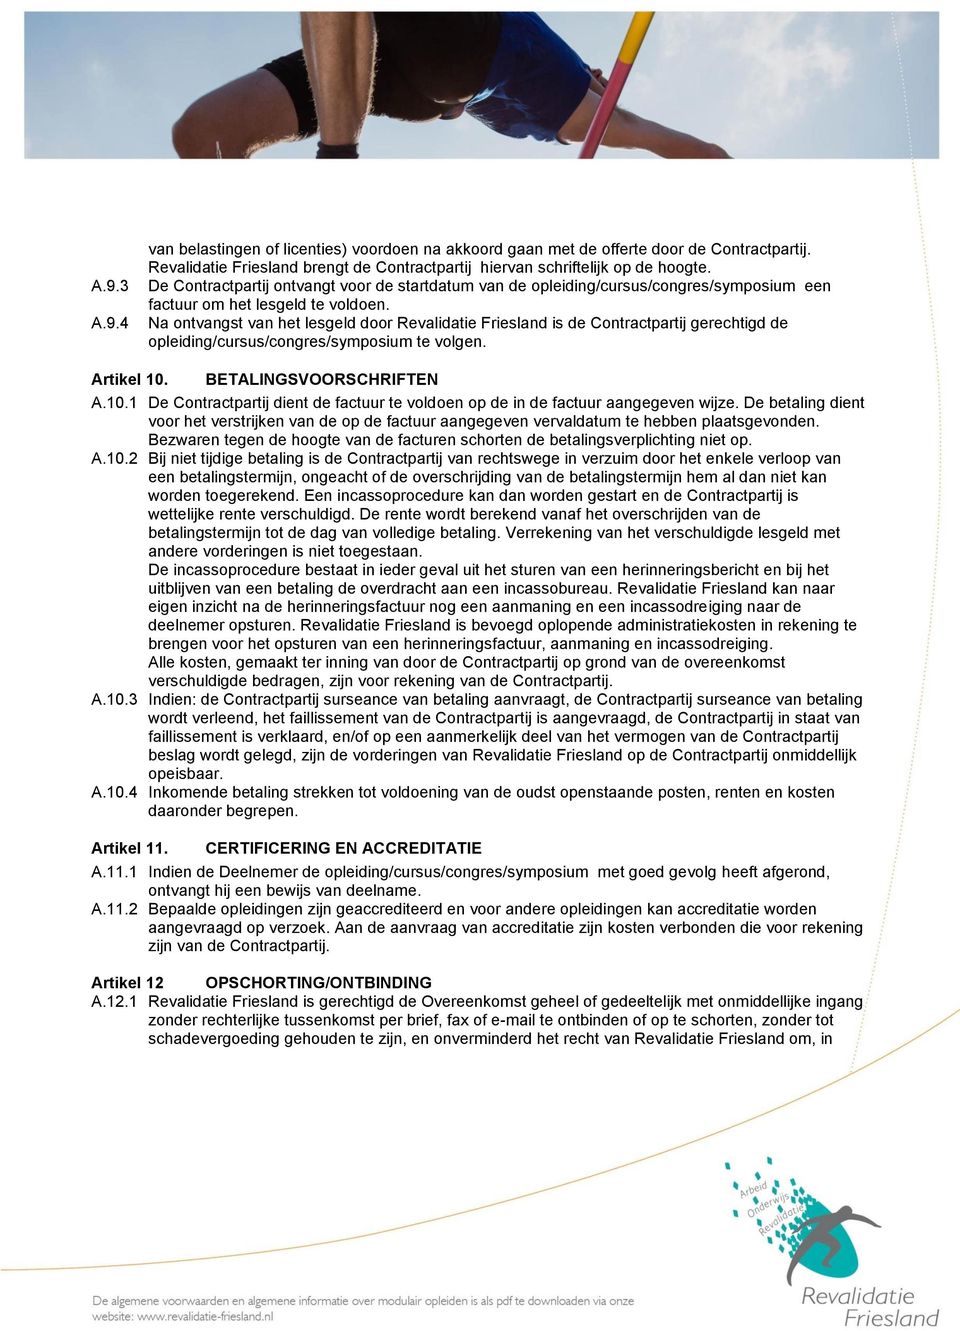 Na ontvangst van het lesgeld door Revalidatie Friesland is de Contractpartij gerechtigd de opleiding/cursus/congres/symposium te volgen. Artikel 10.